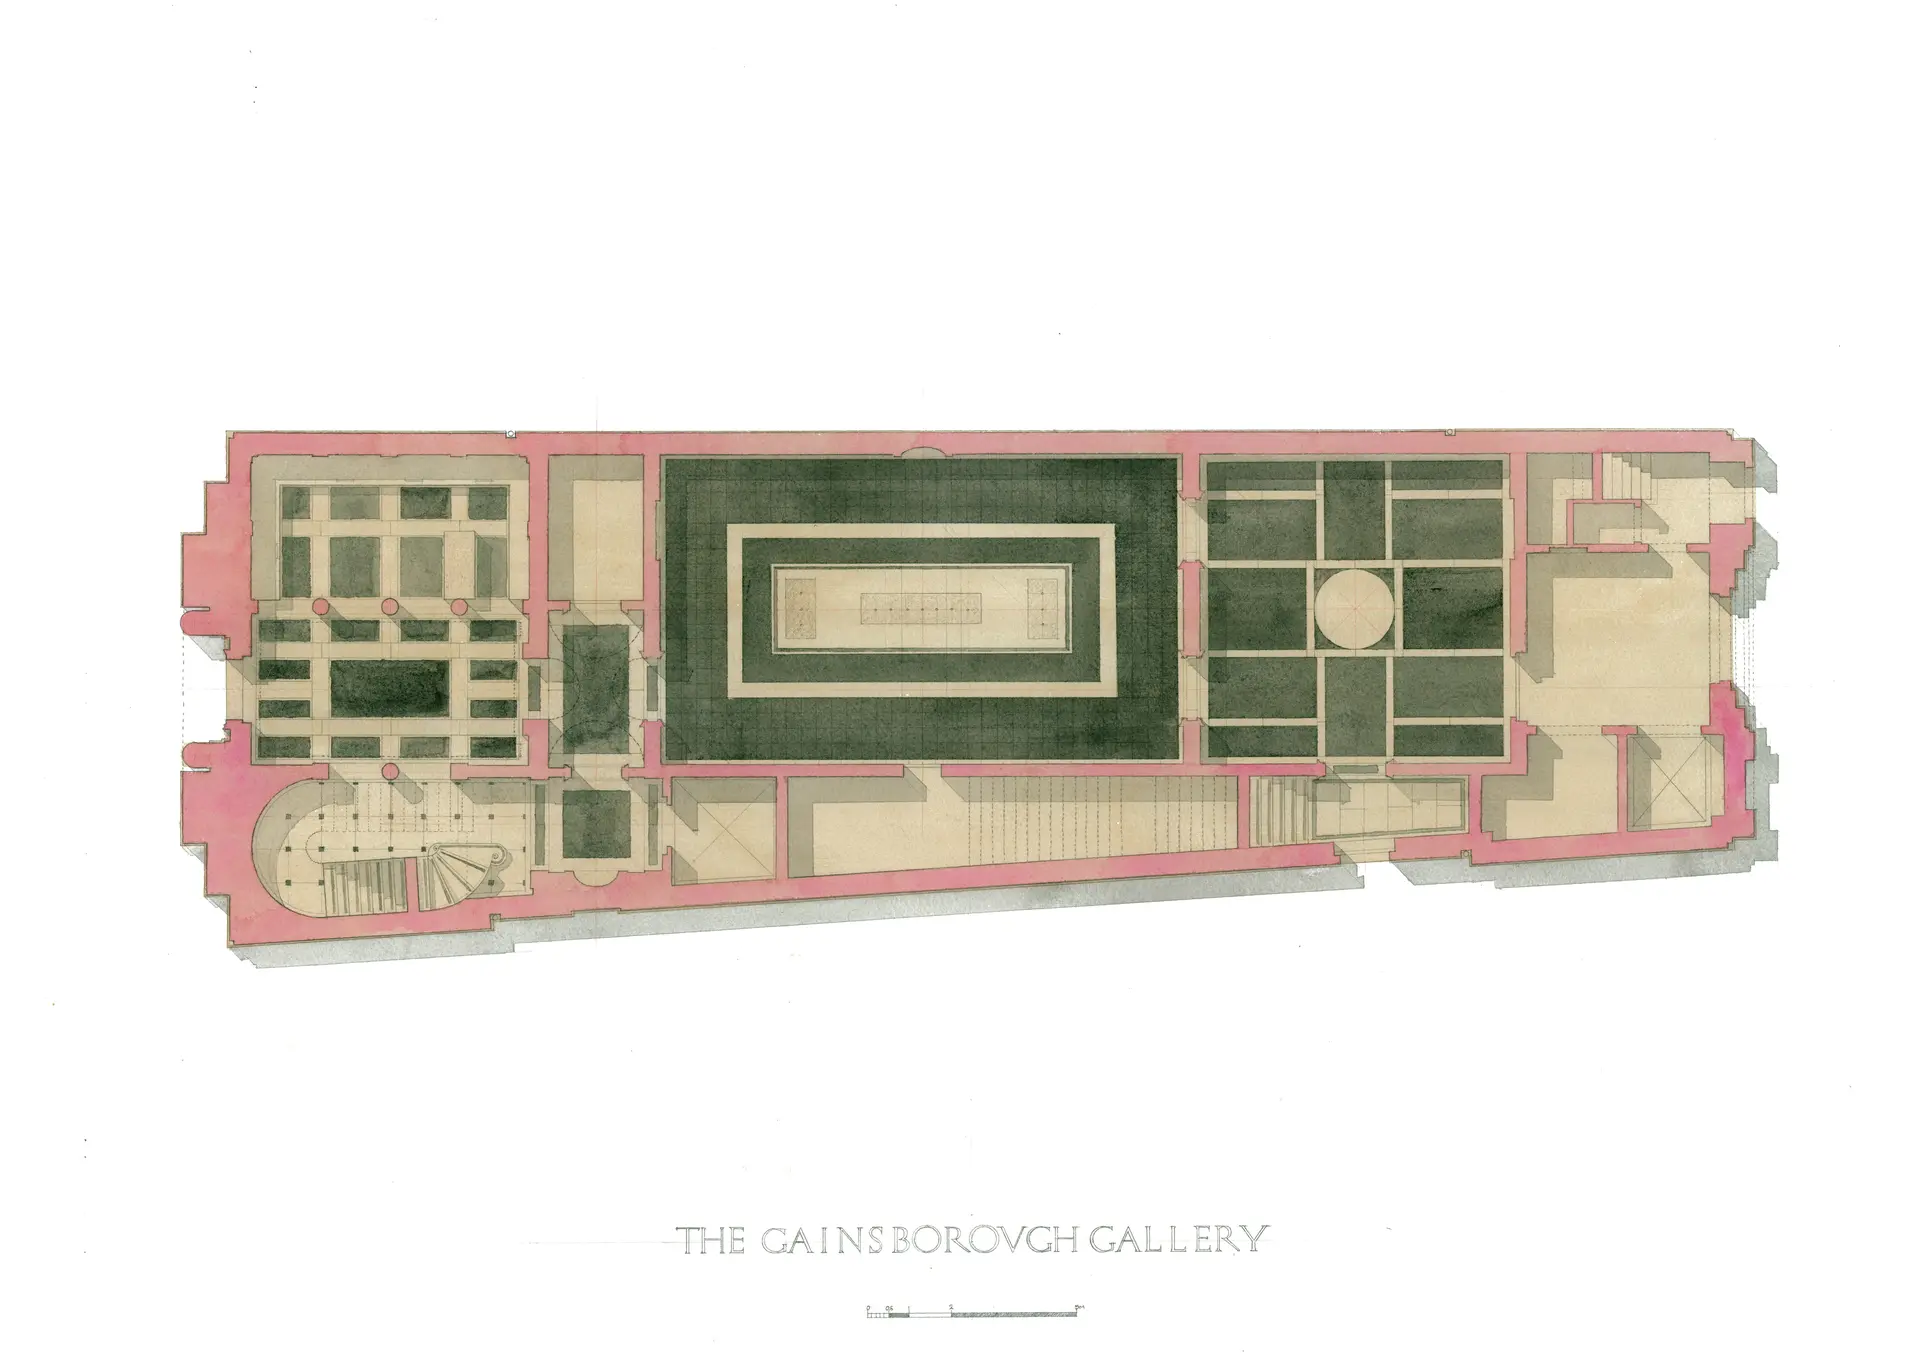 Gainsborough House gallery annexe, first floor plan, Peter Folland 2016